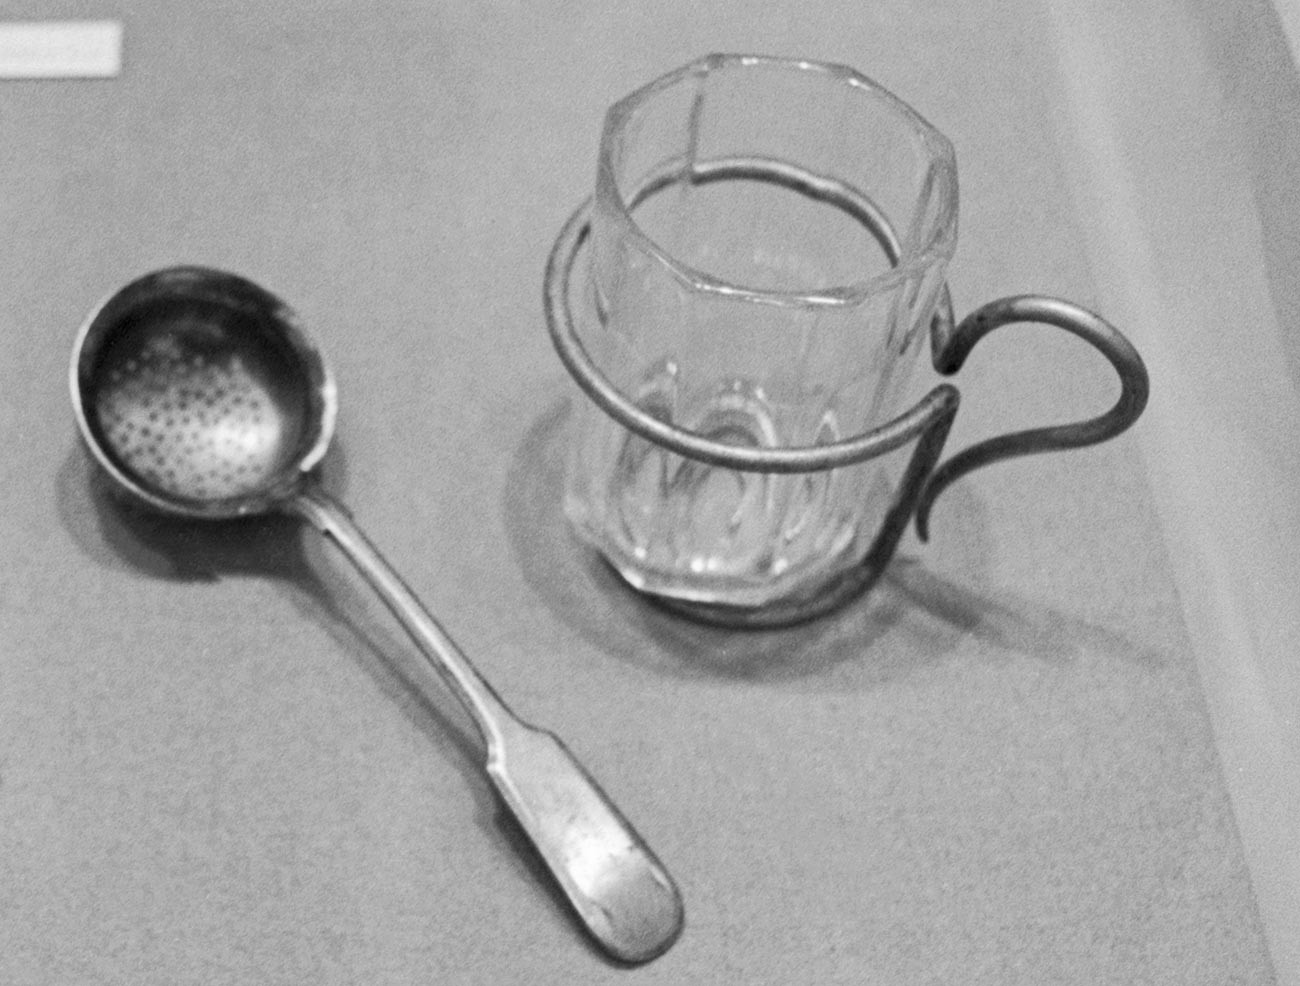 Ein Teelöffel zum Aufbrühen von Tee und ein Glashalter, den Wladimir Lenin verwendete.